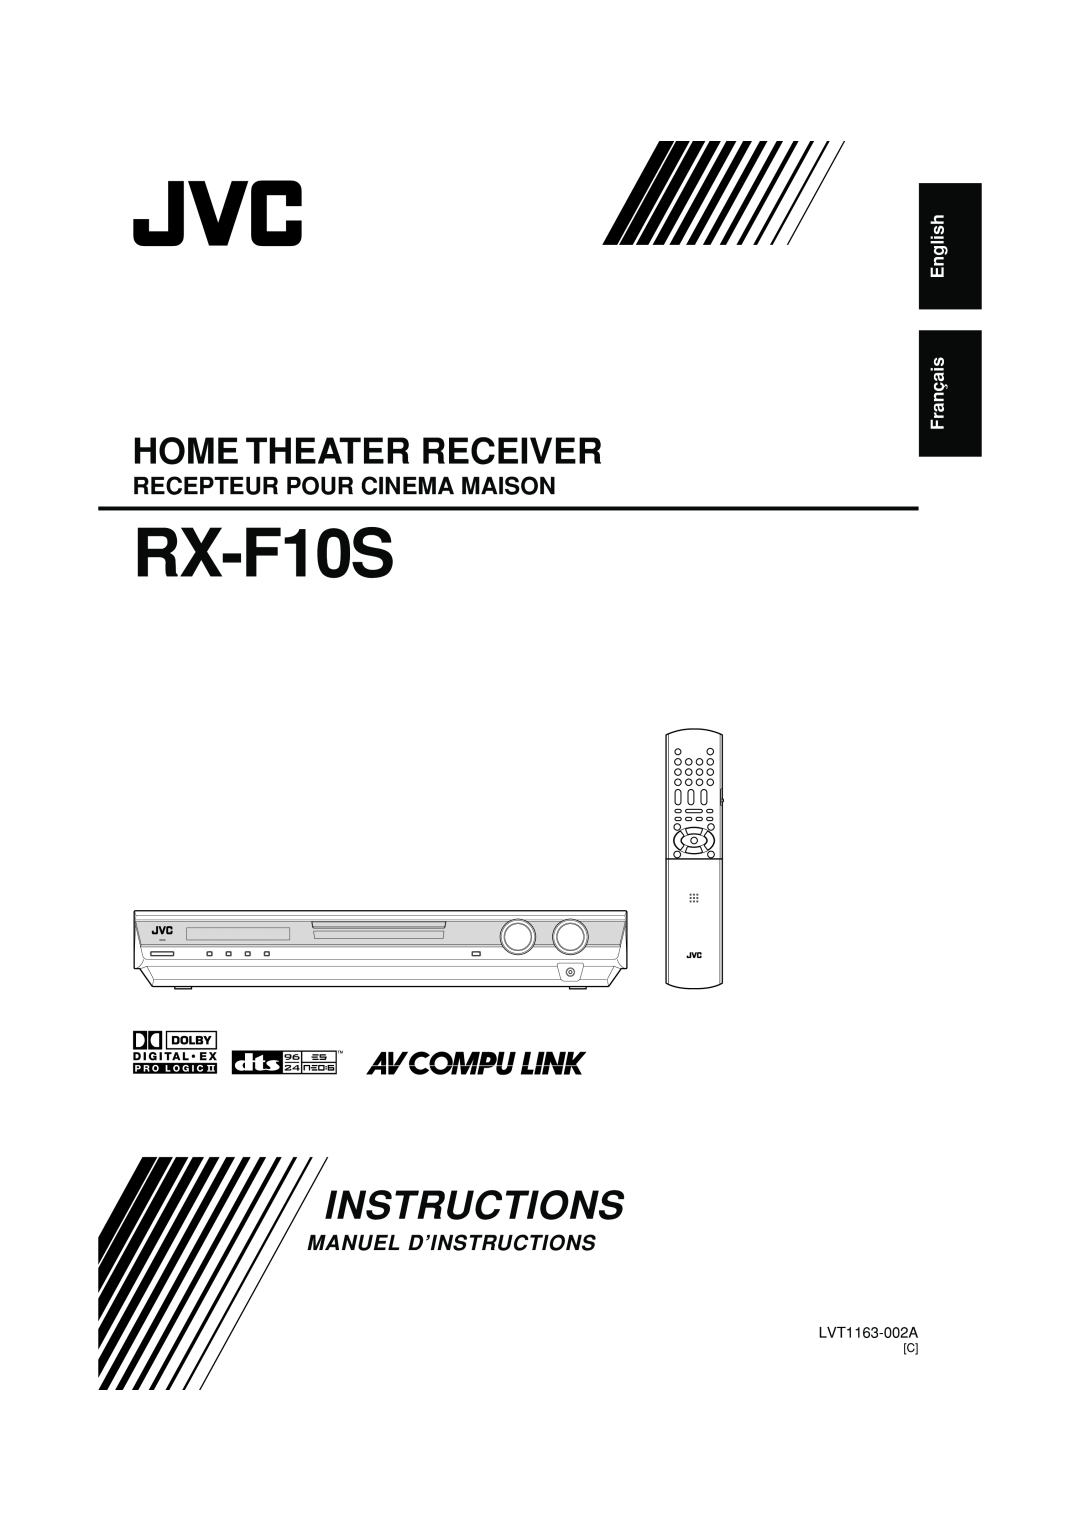 JVC RX-F10S manual English Français, Home Theater Receiver, Recepteur Pour Cinema Maison, Manuel D’Instructions 